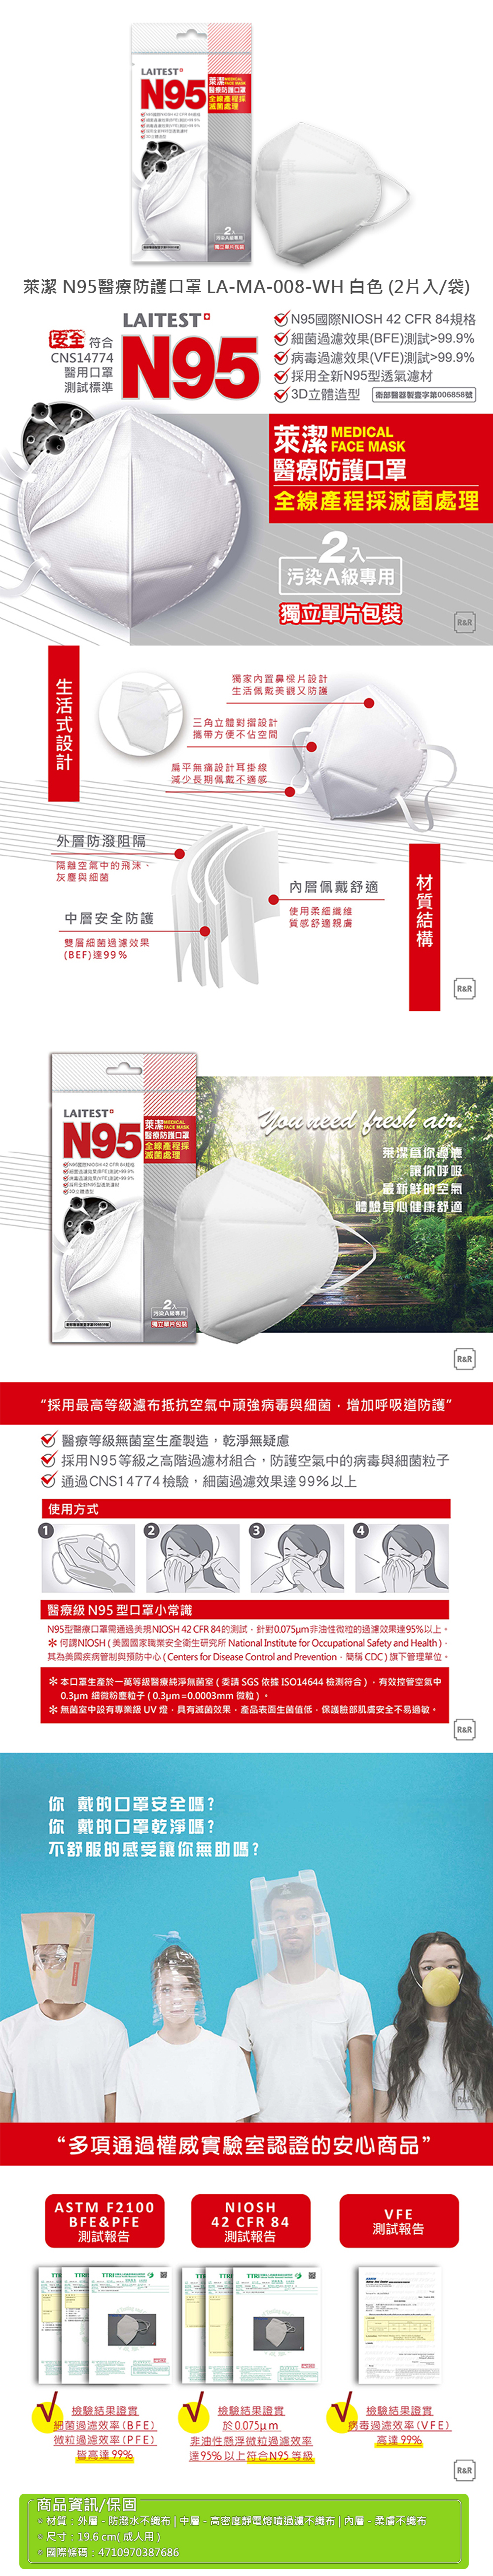 【萊潔】N95醫療防護口罩 白色(2片/袋)